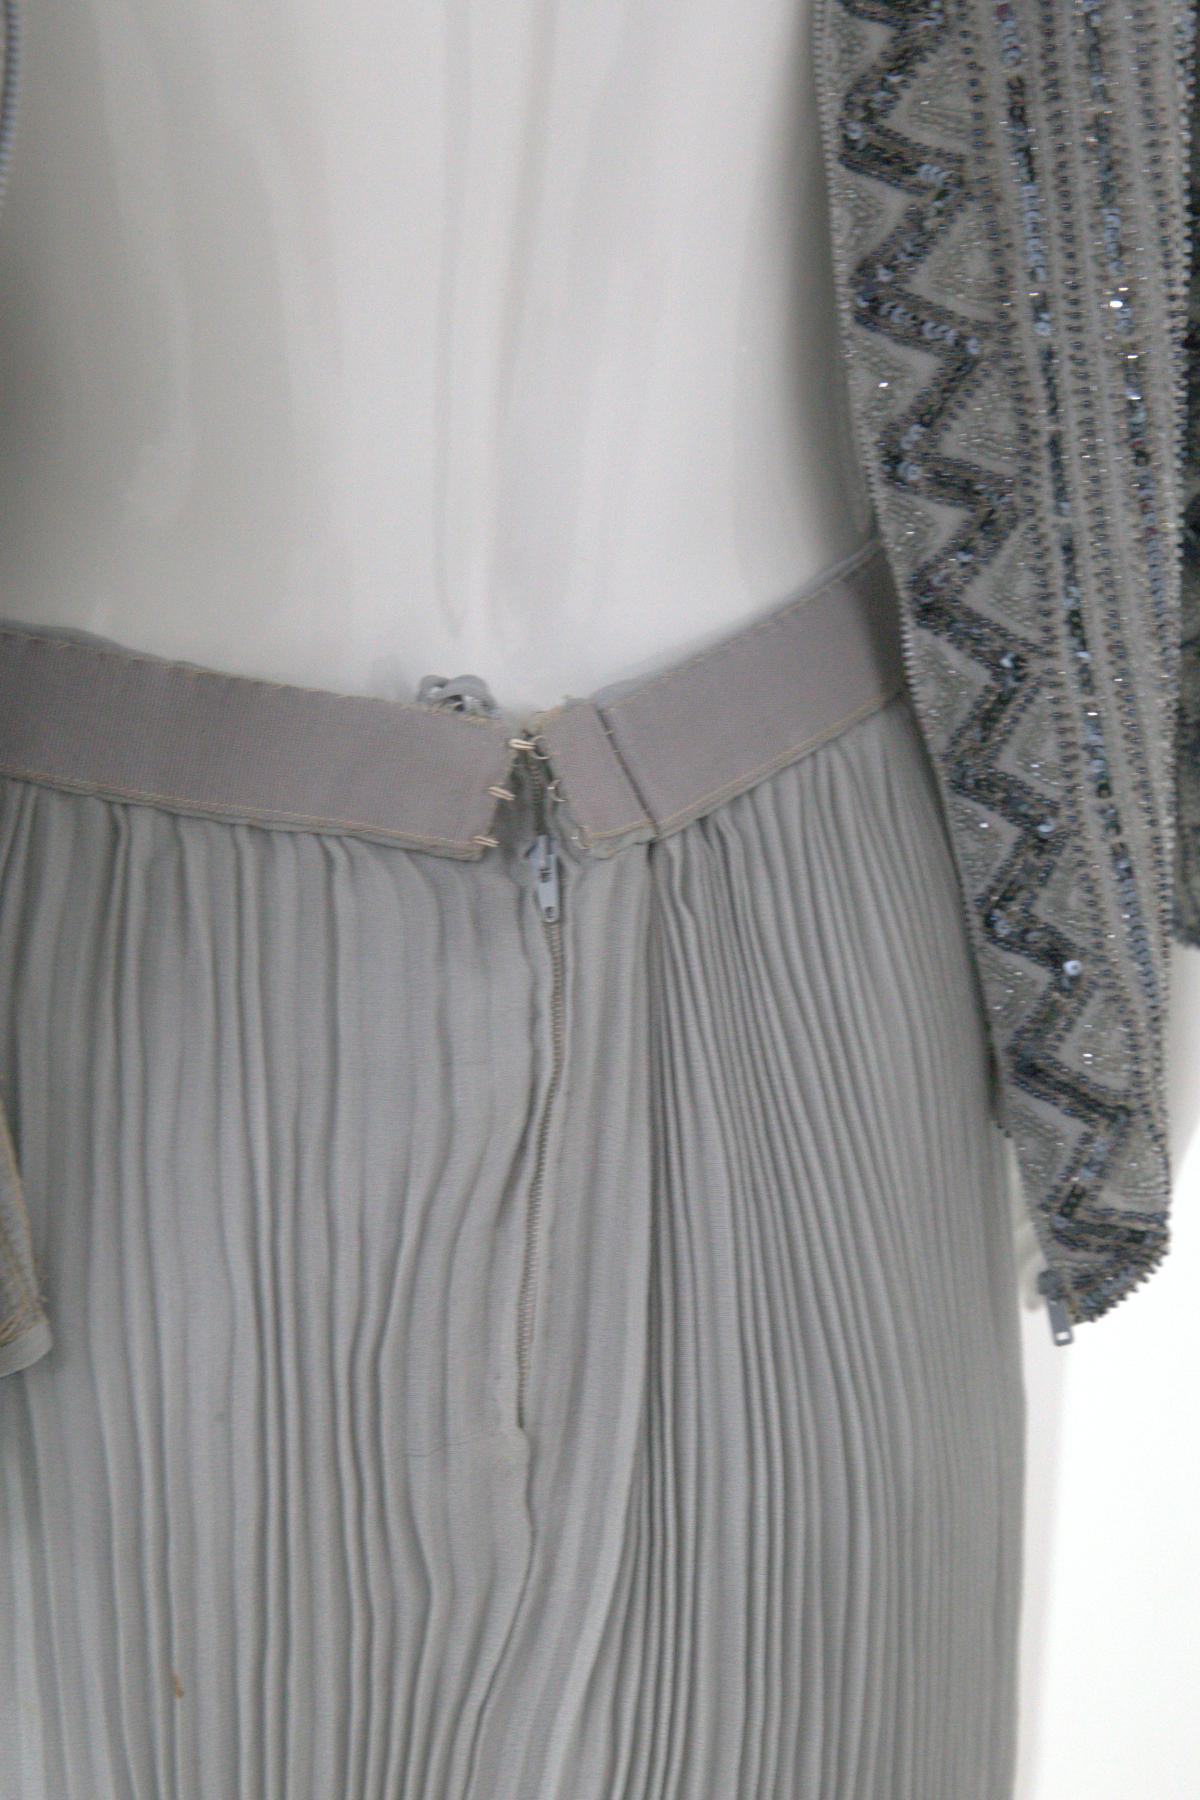 Renato Balestra elegant Gray Sequined Vintage Evening Dress For Sale 5